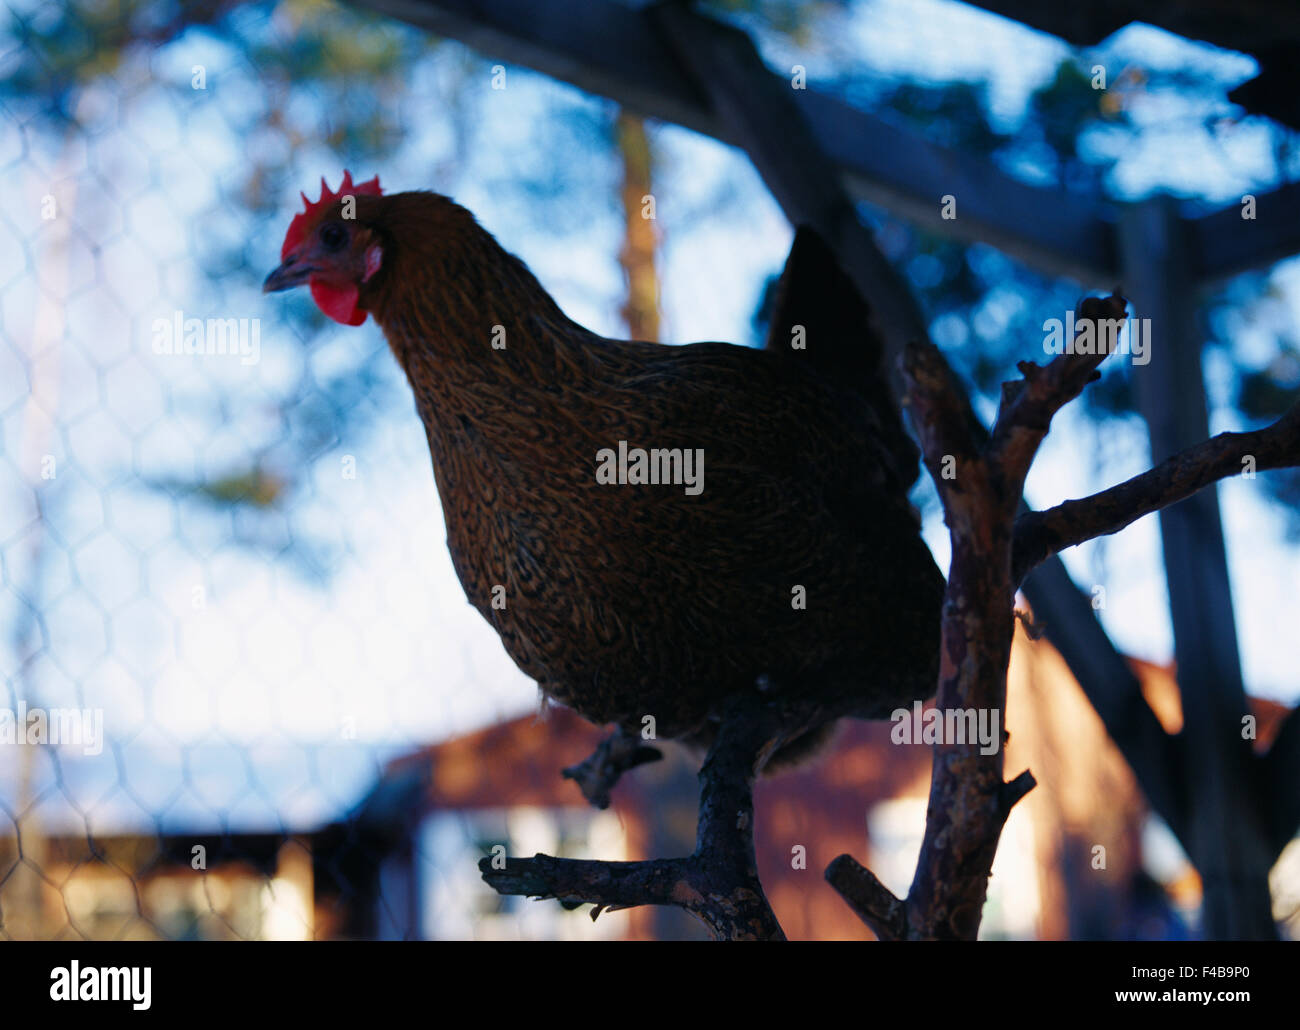 Vogel Käfig Katalog 2 Hühnerfarm Farbe Bild Henne horizontale ein Tier Geflügel schwedischen Katalog 4 Stockfoto